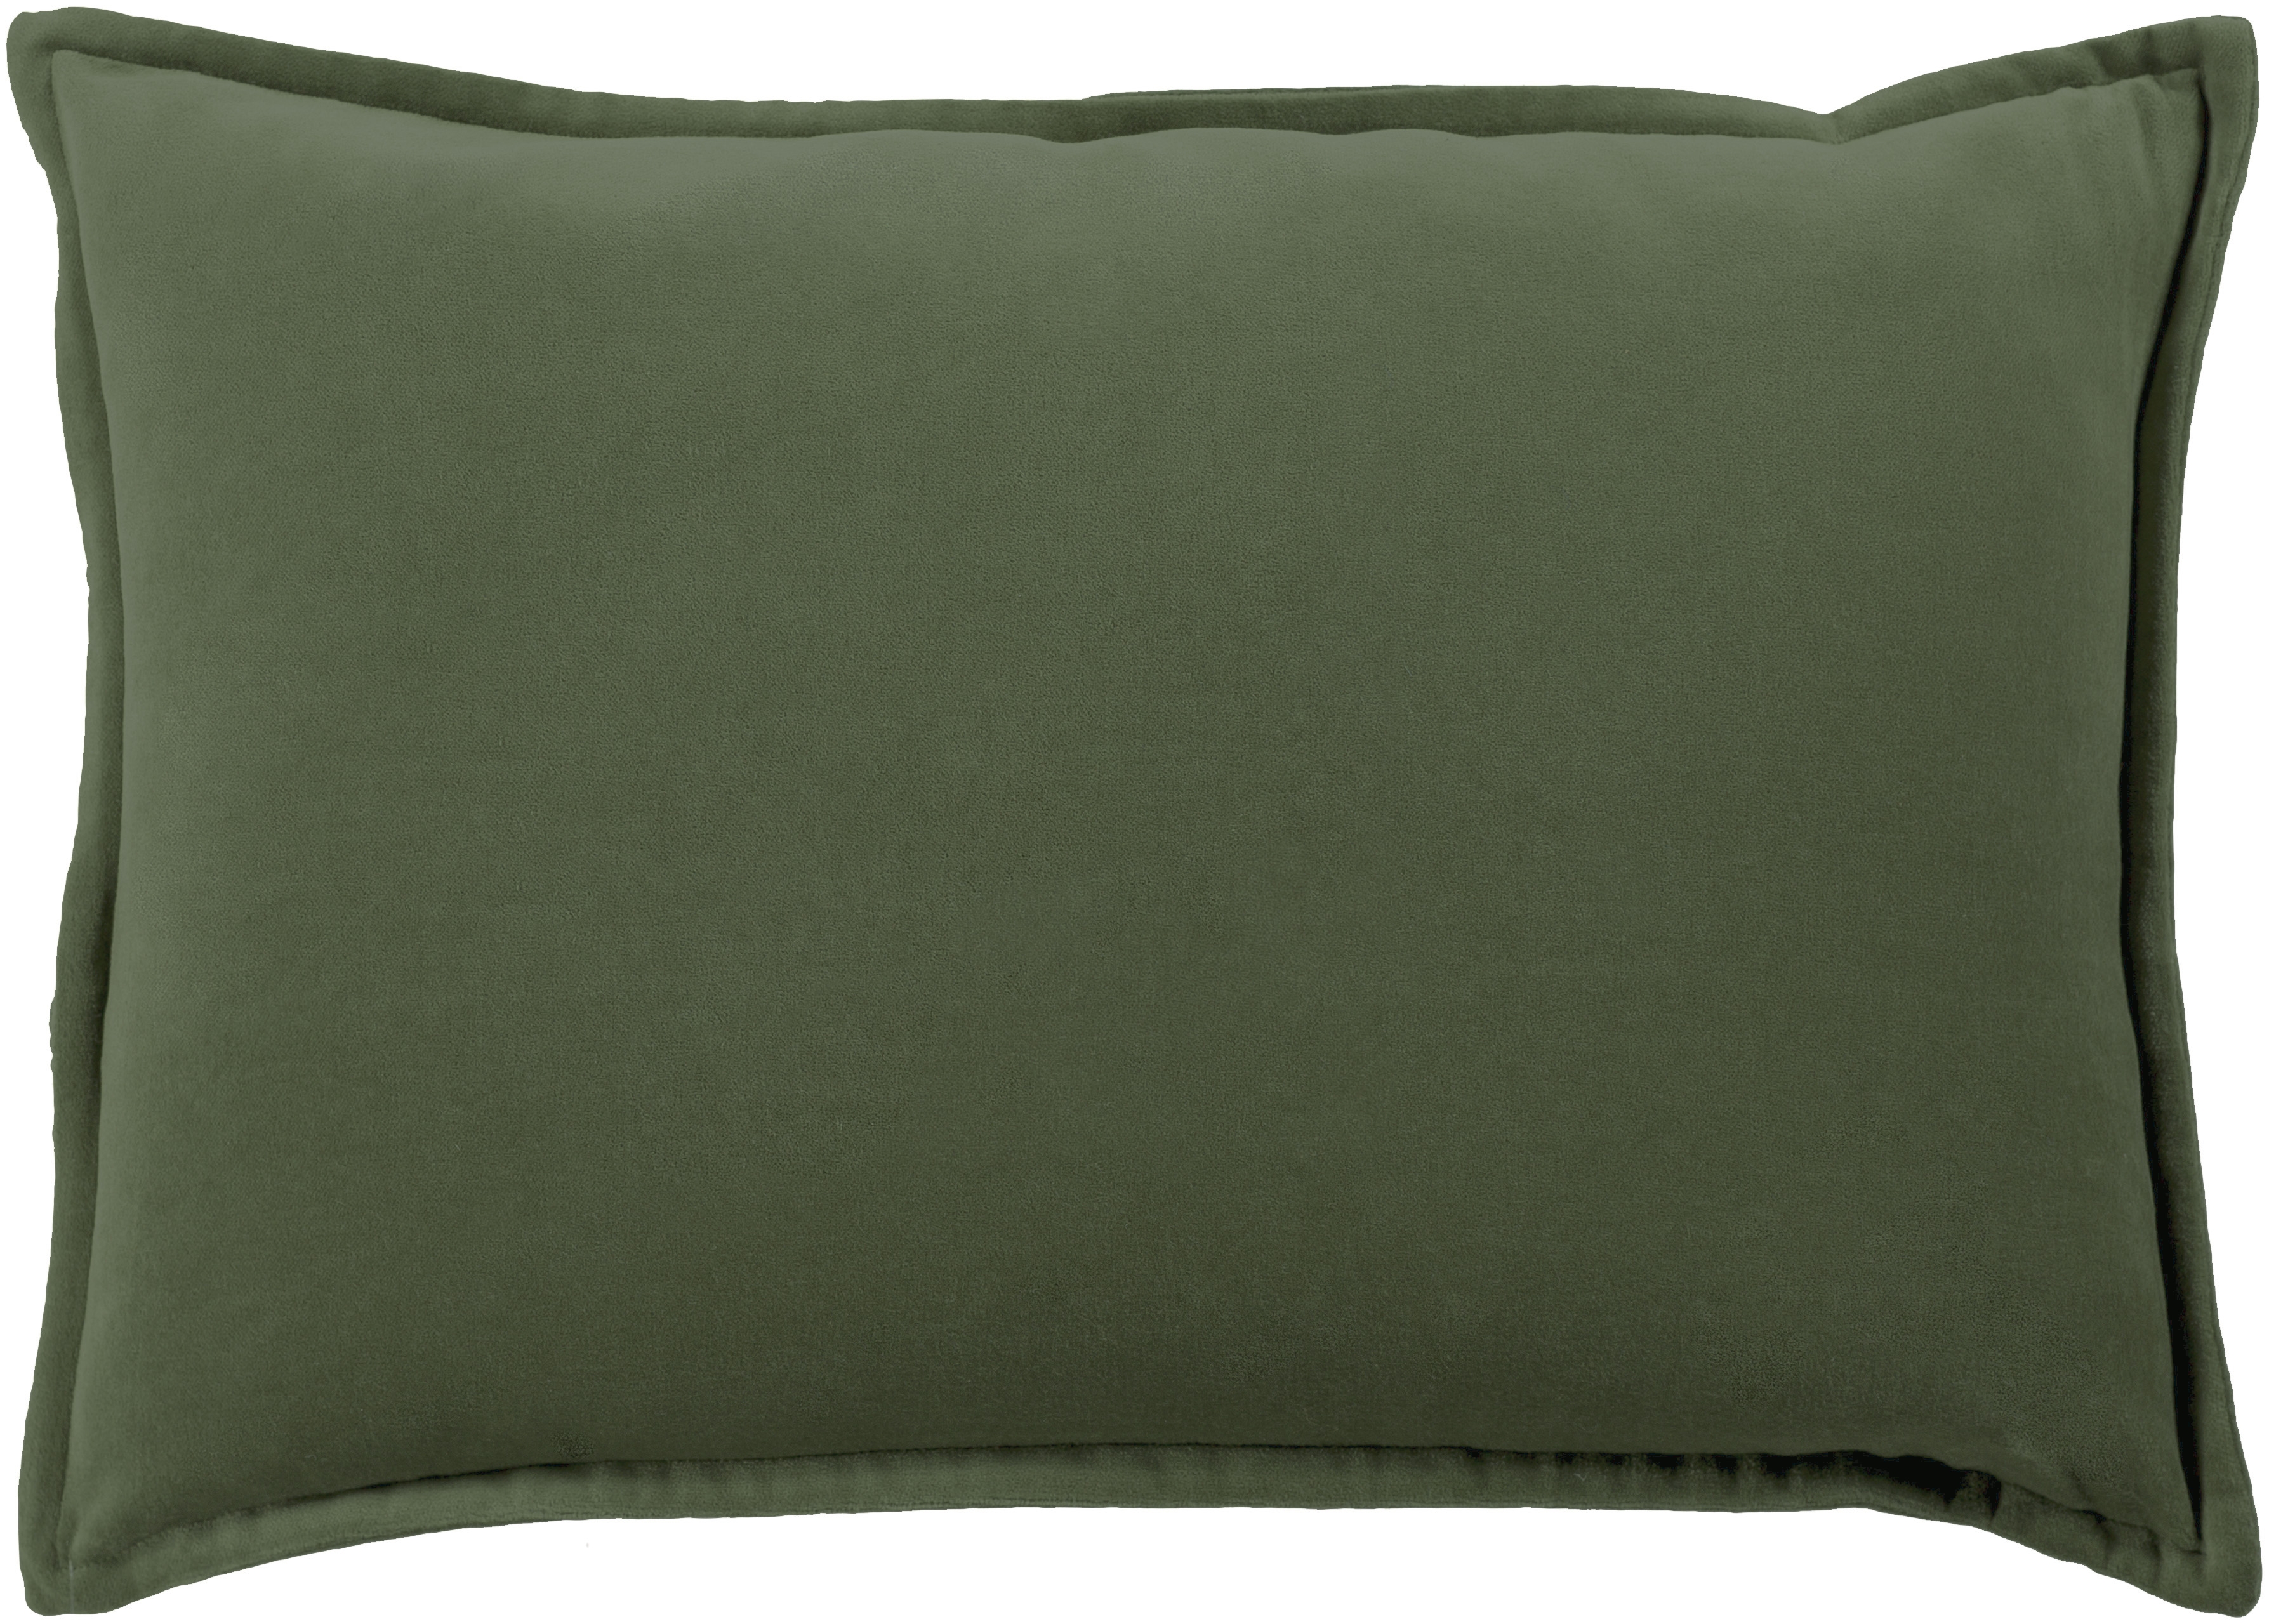 Cotton Velvet, 18" Pillow Cover - Image 0